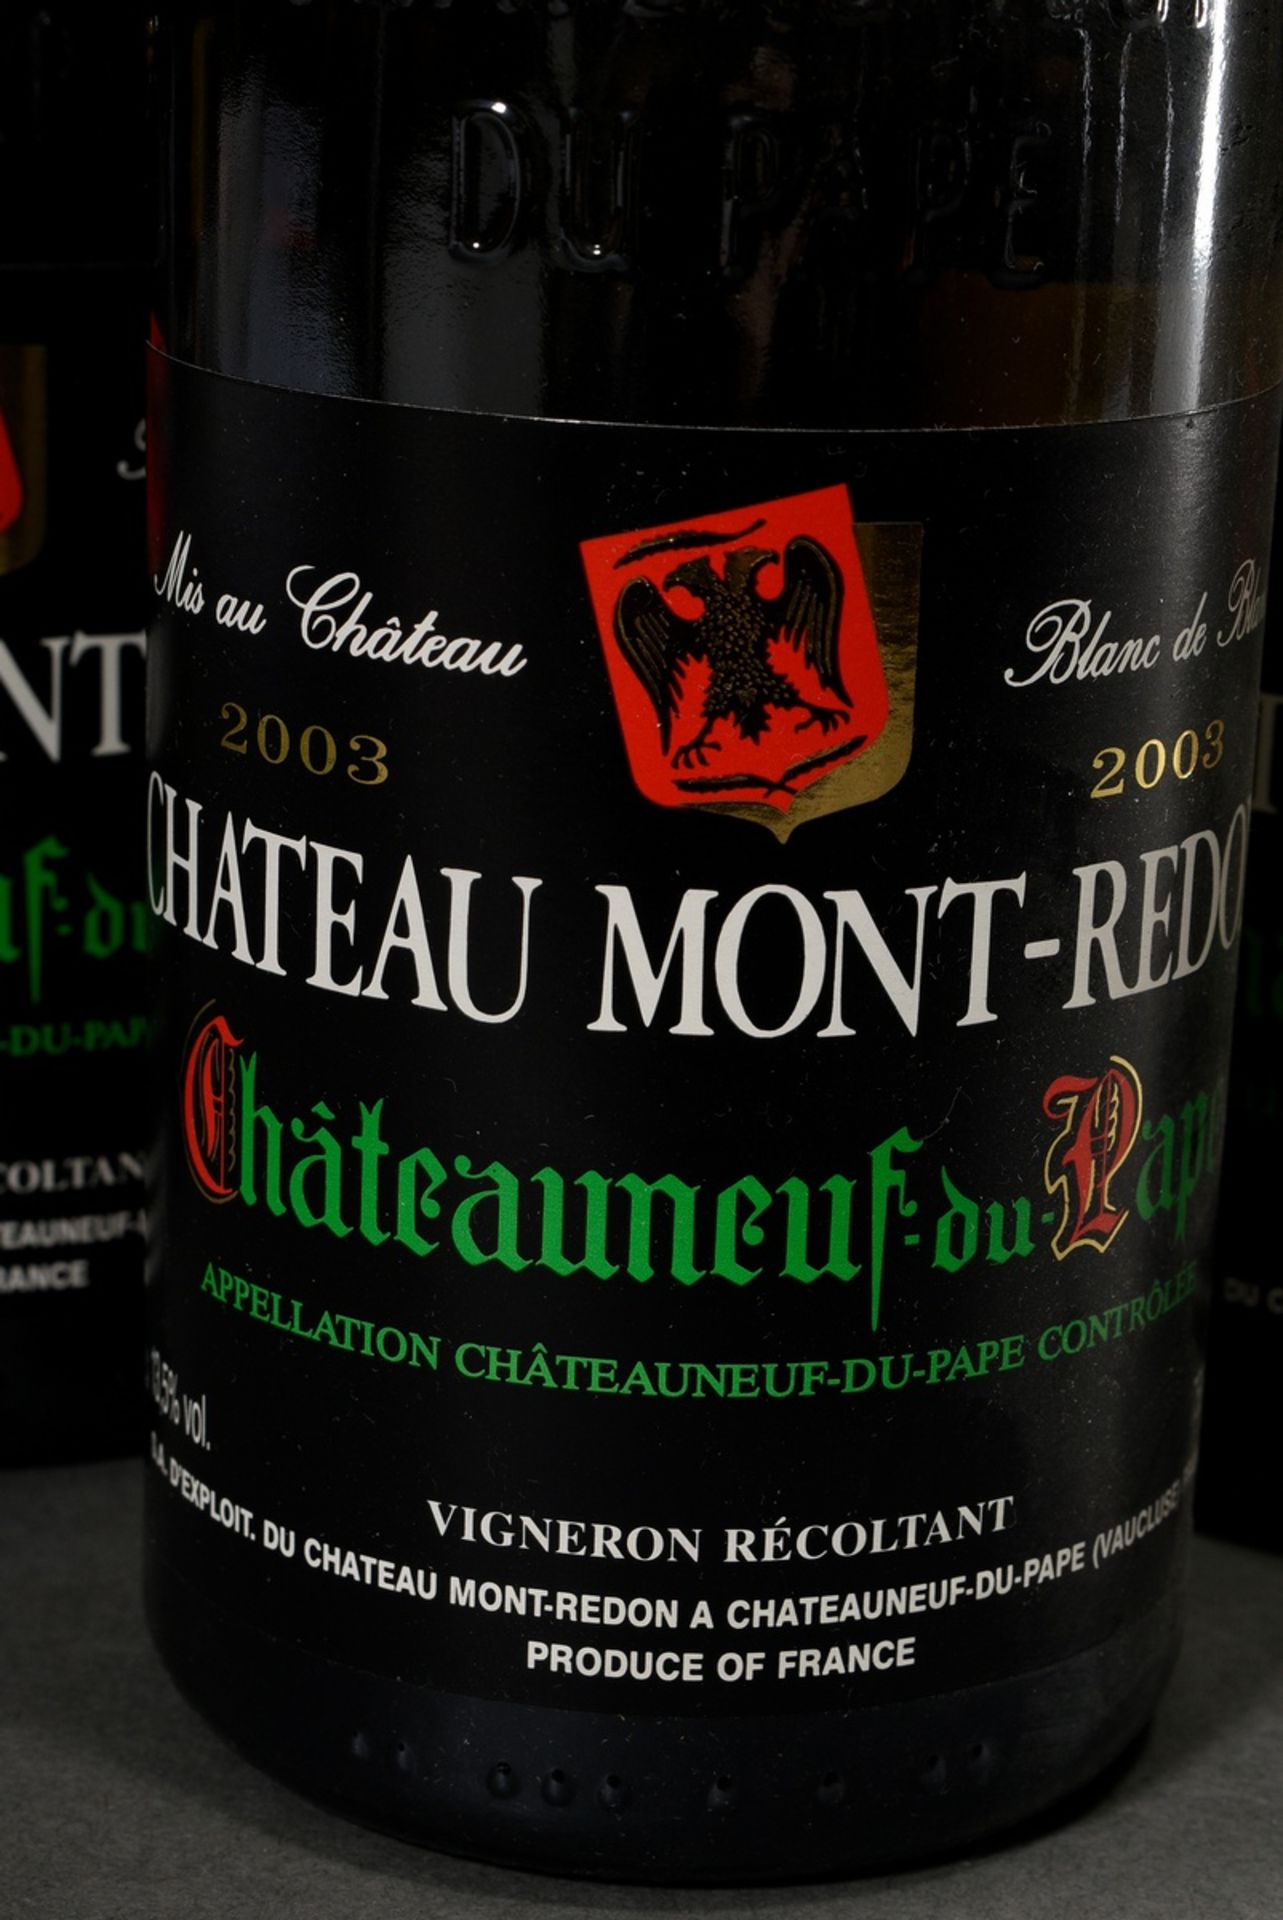 16 Flaschen 2003 Chateau Mont-Redon, Chateauneuf du Pape blanc, Weißwein, Rhone, Frankreich, 0,75l, - Bild 2 aus 4